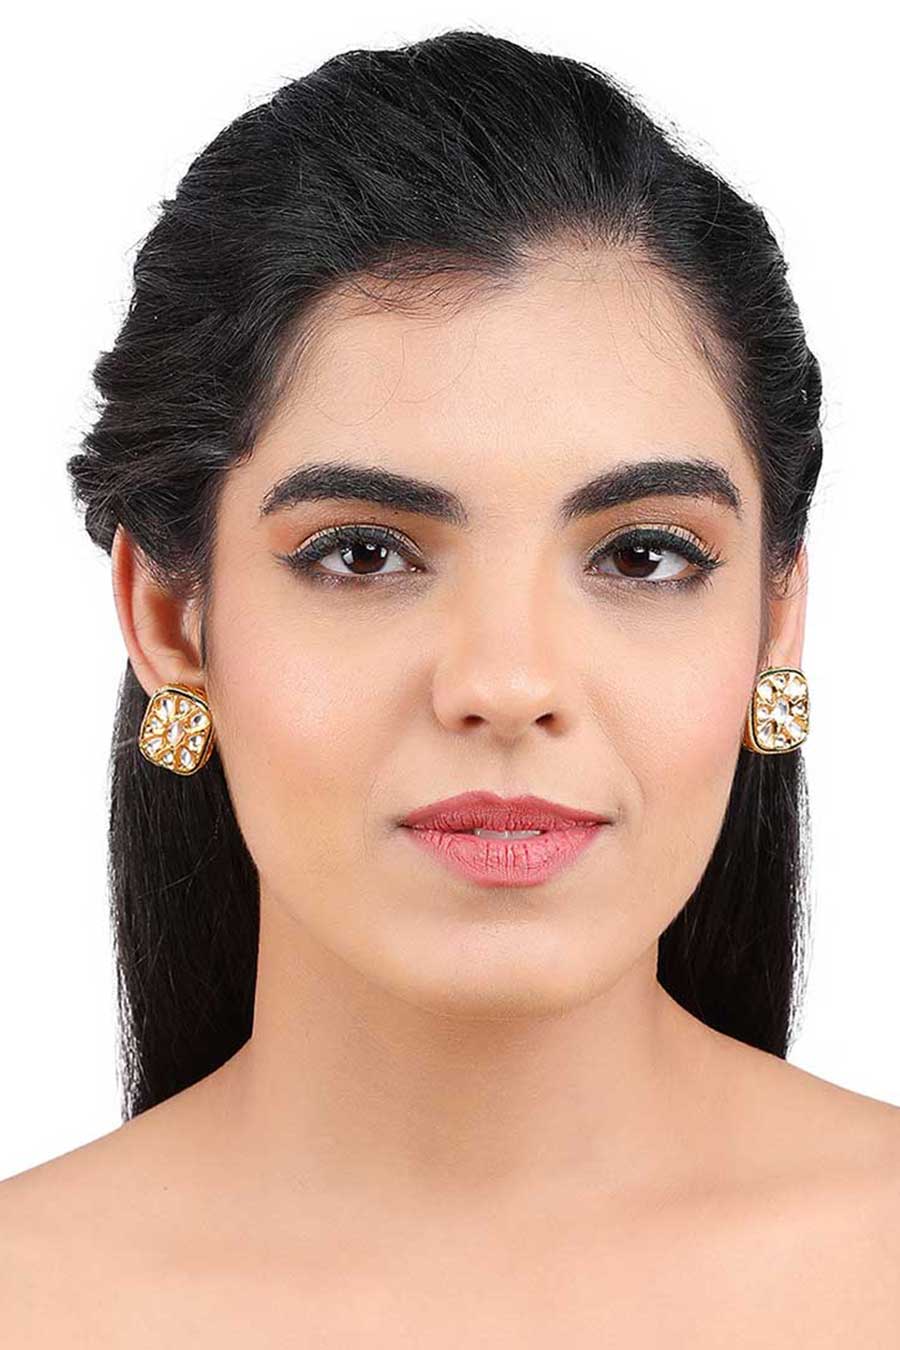 14k White Gold Blue Topaz Stud Earrings - Art FX fine jewelry